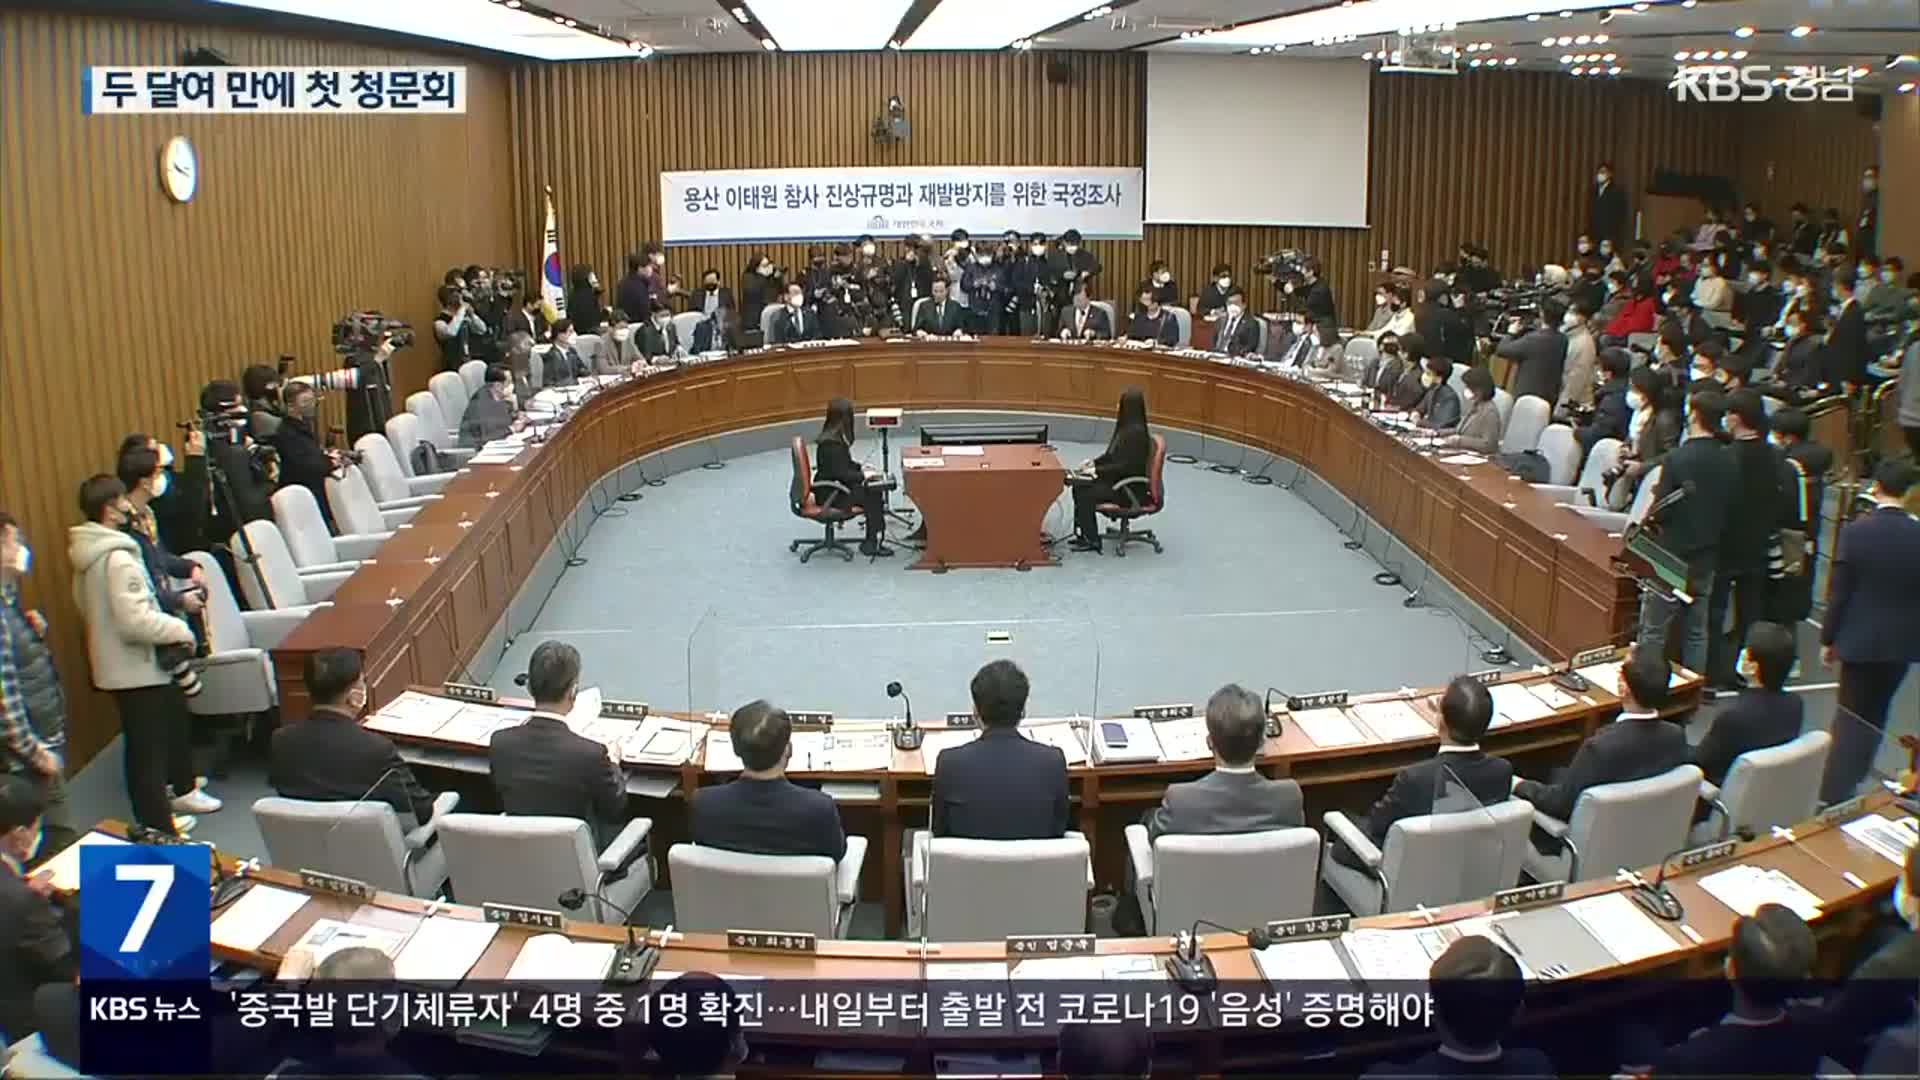 두 달여 만의 첫 청문회…경찰청장 “참사 당일 음주” 인정